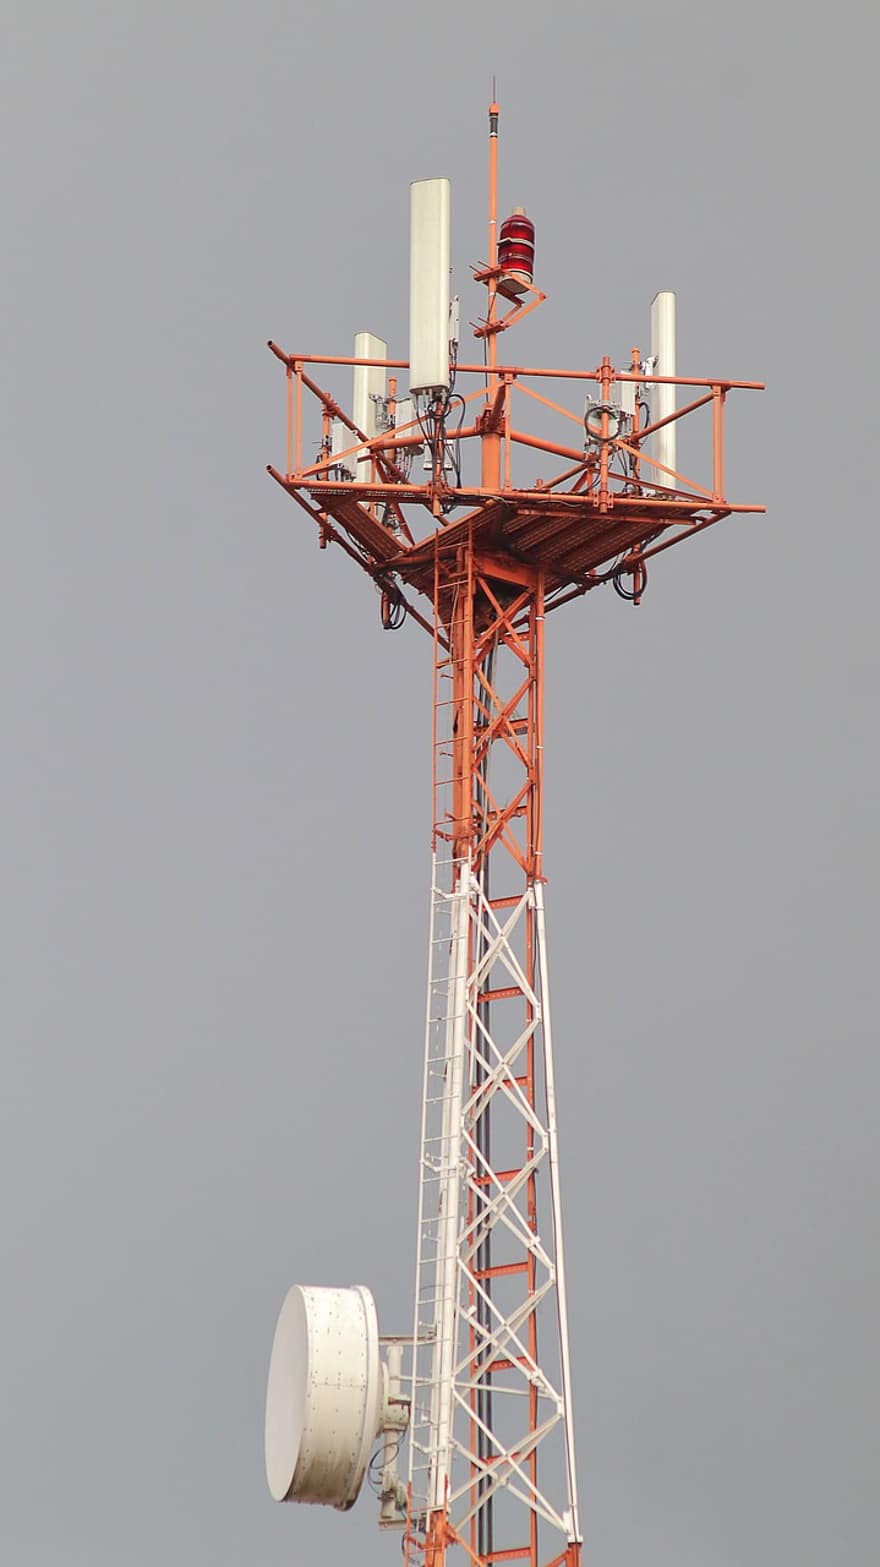 телекомунікаційна вежа, радіо щогла, вежа, антена, щогла, структура, телекомунікації, частота, спосіб передавання, з'єднання